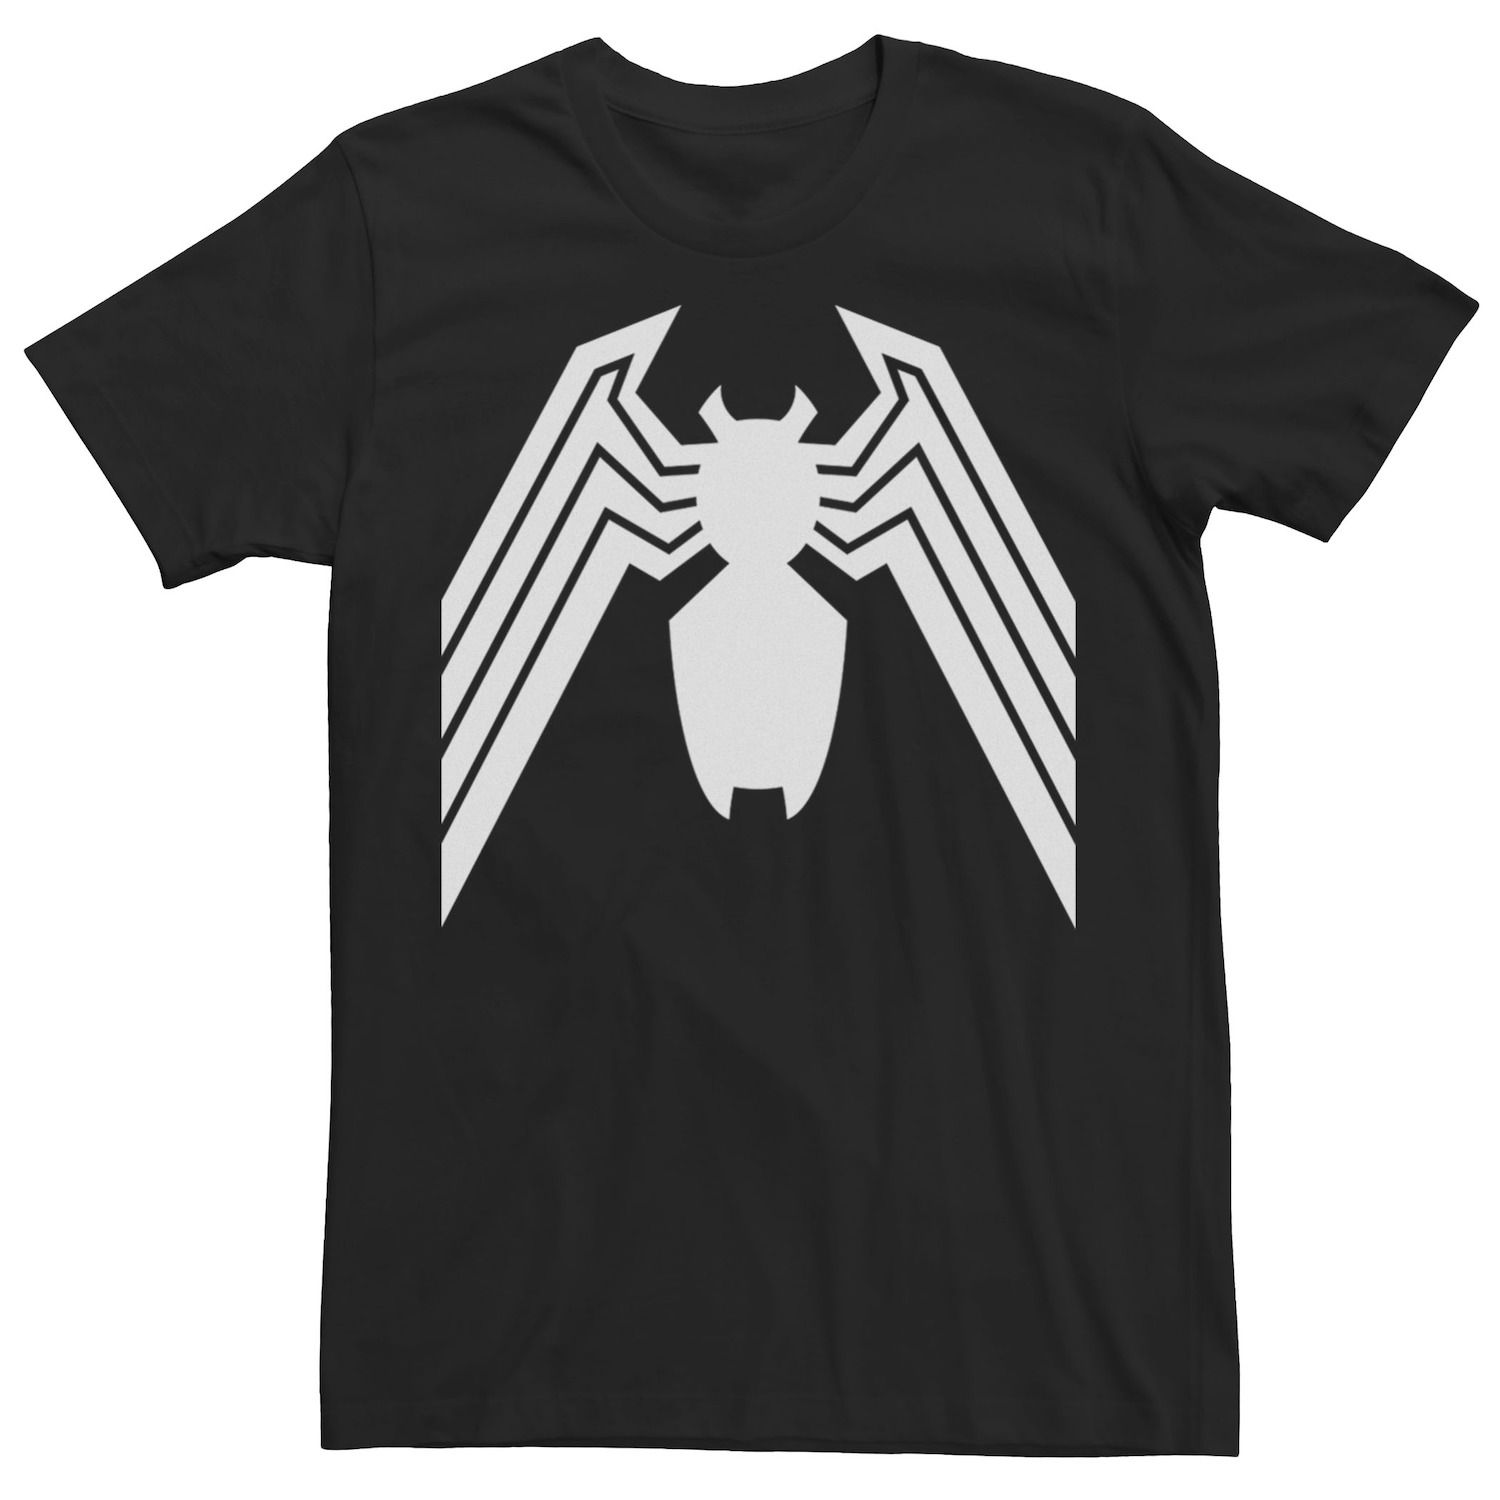 Мужская футболка с логотипом Venom Classic Marvel мужская толстовка с логотипом venom classic marvel